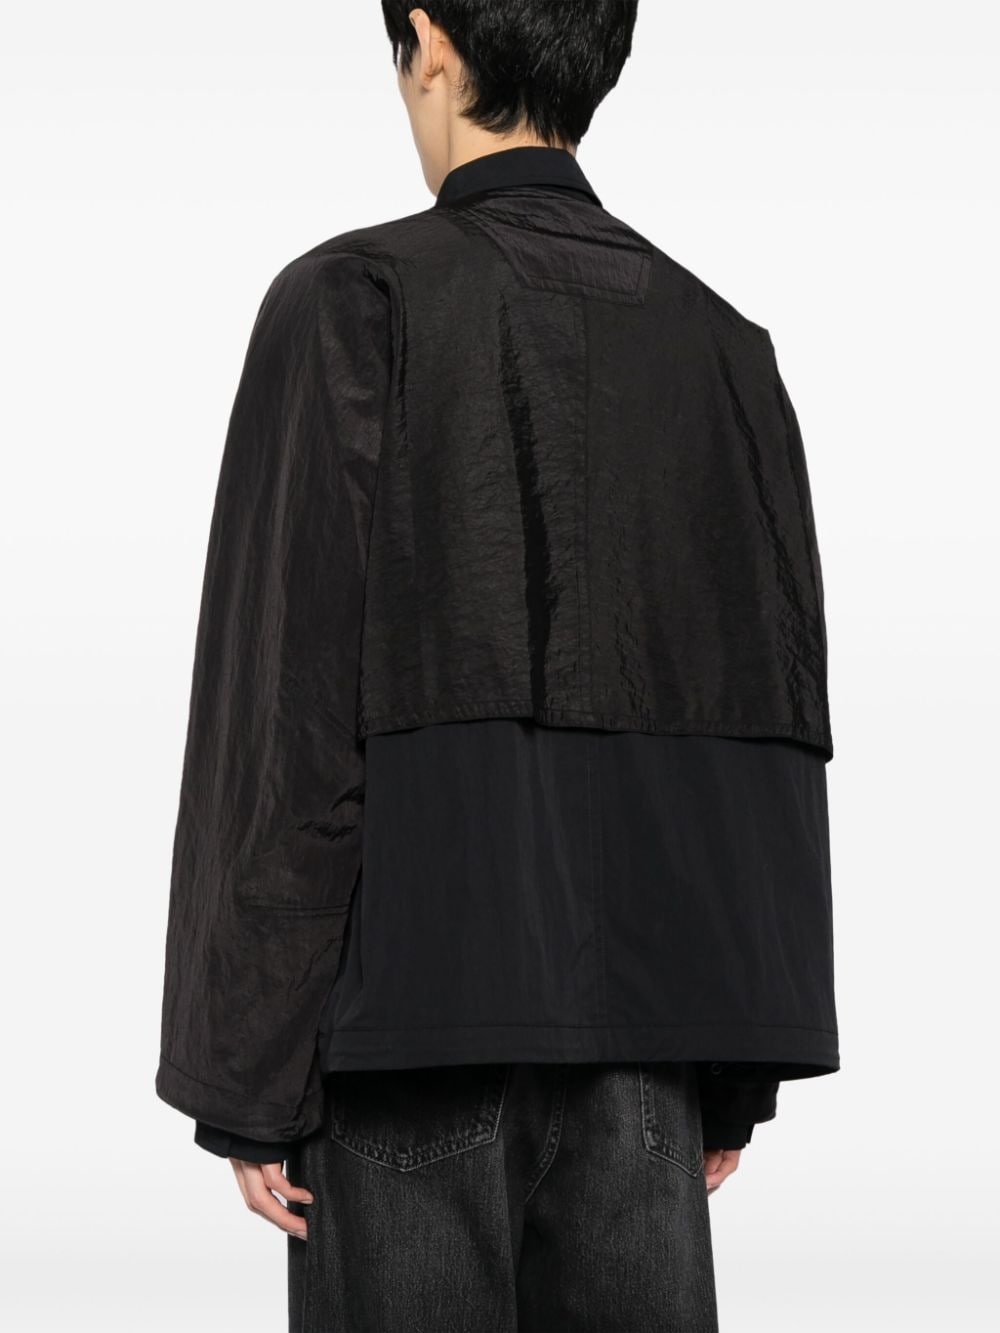 panelled lightweight shirt jacket - 4